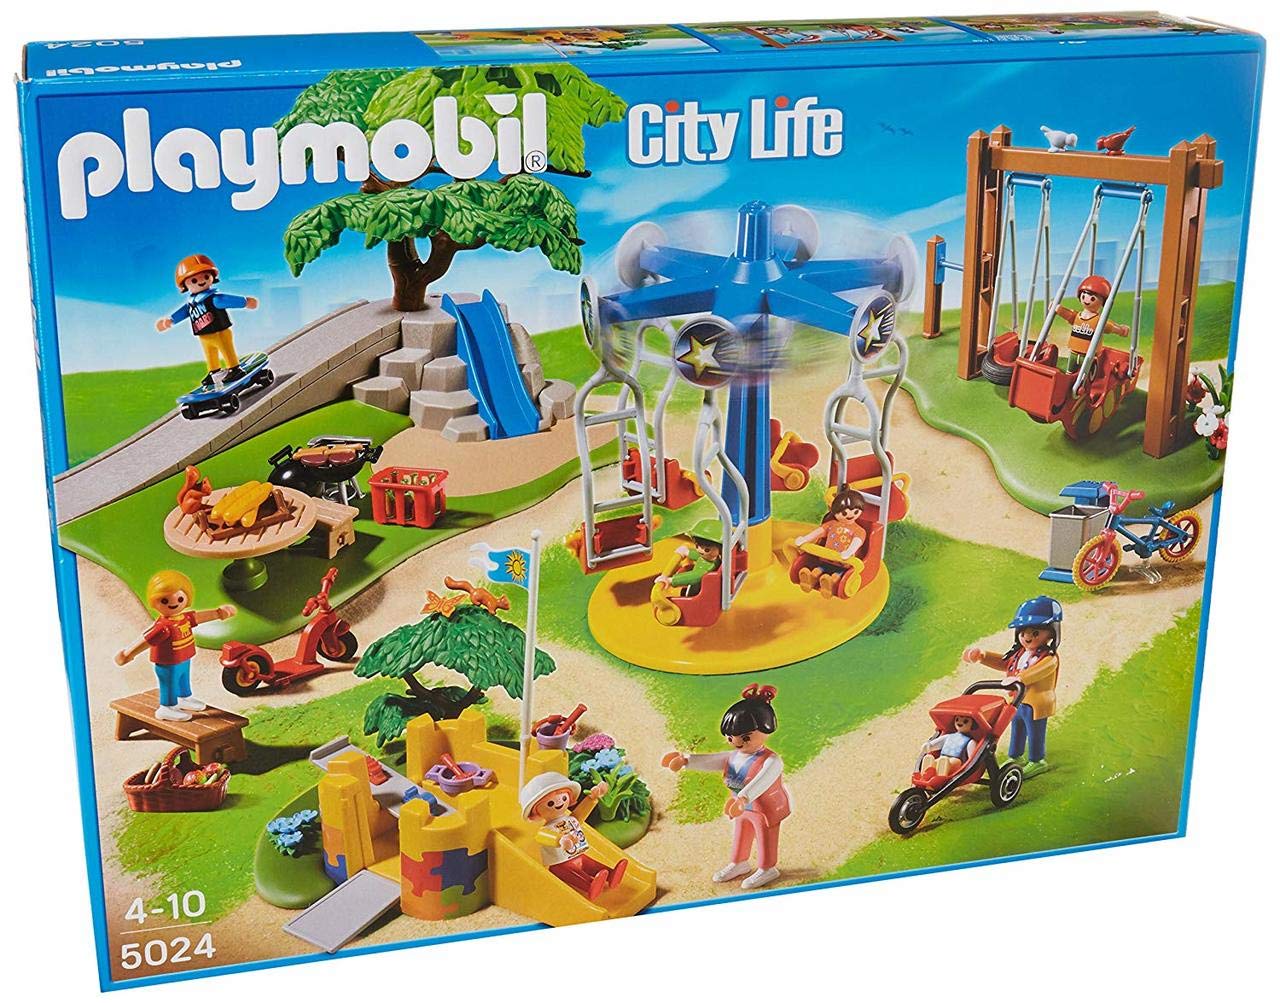 Playmobil City Life Playground